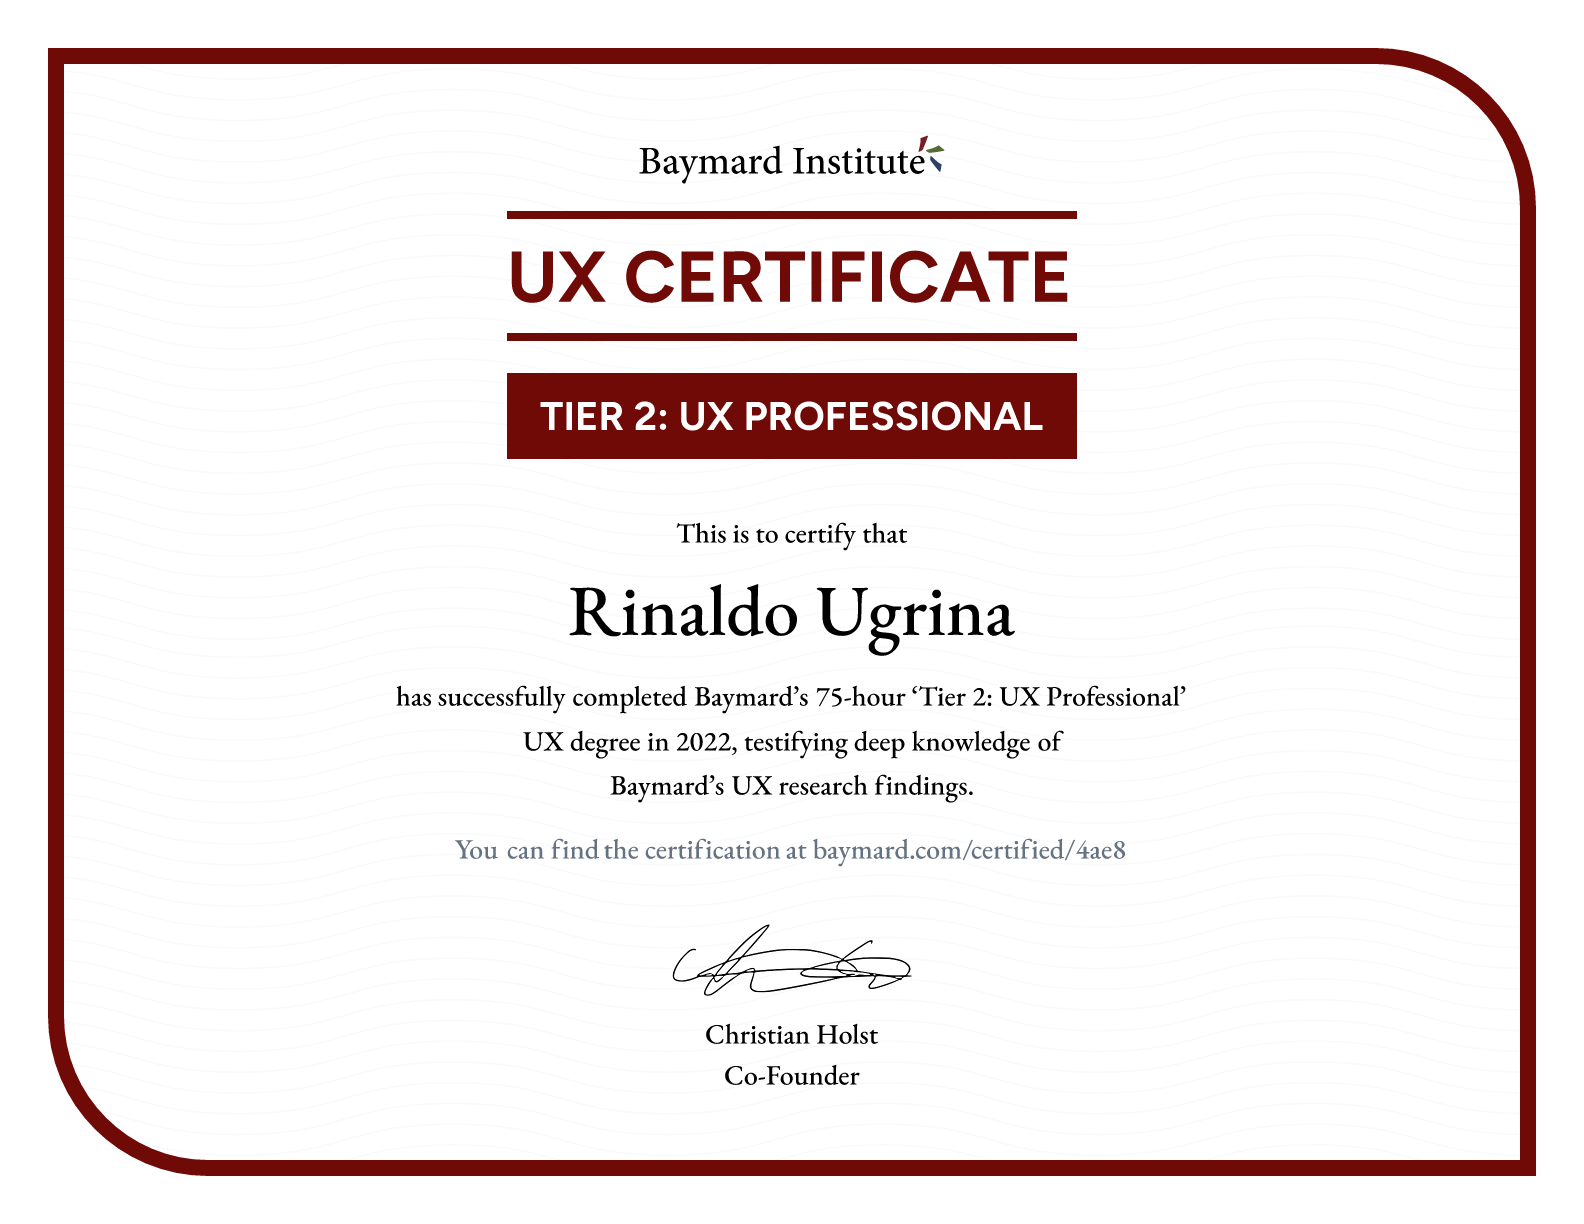 Rinaldo Ugrina’s certificate